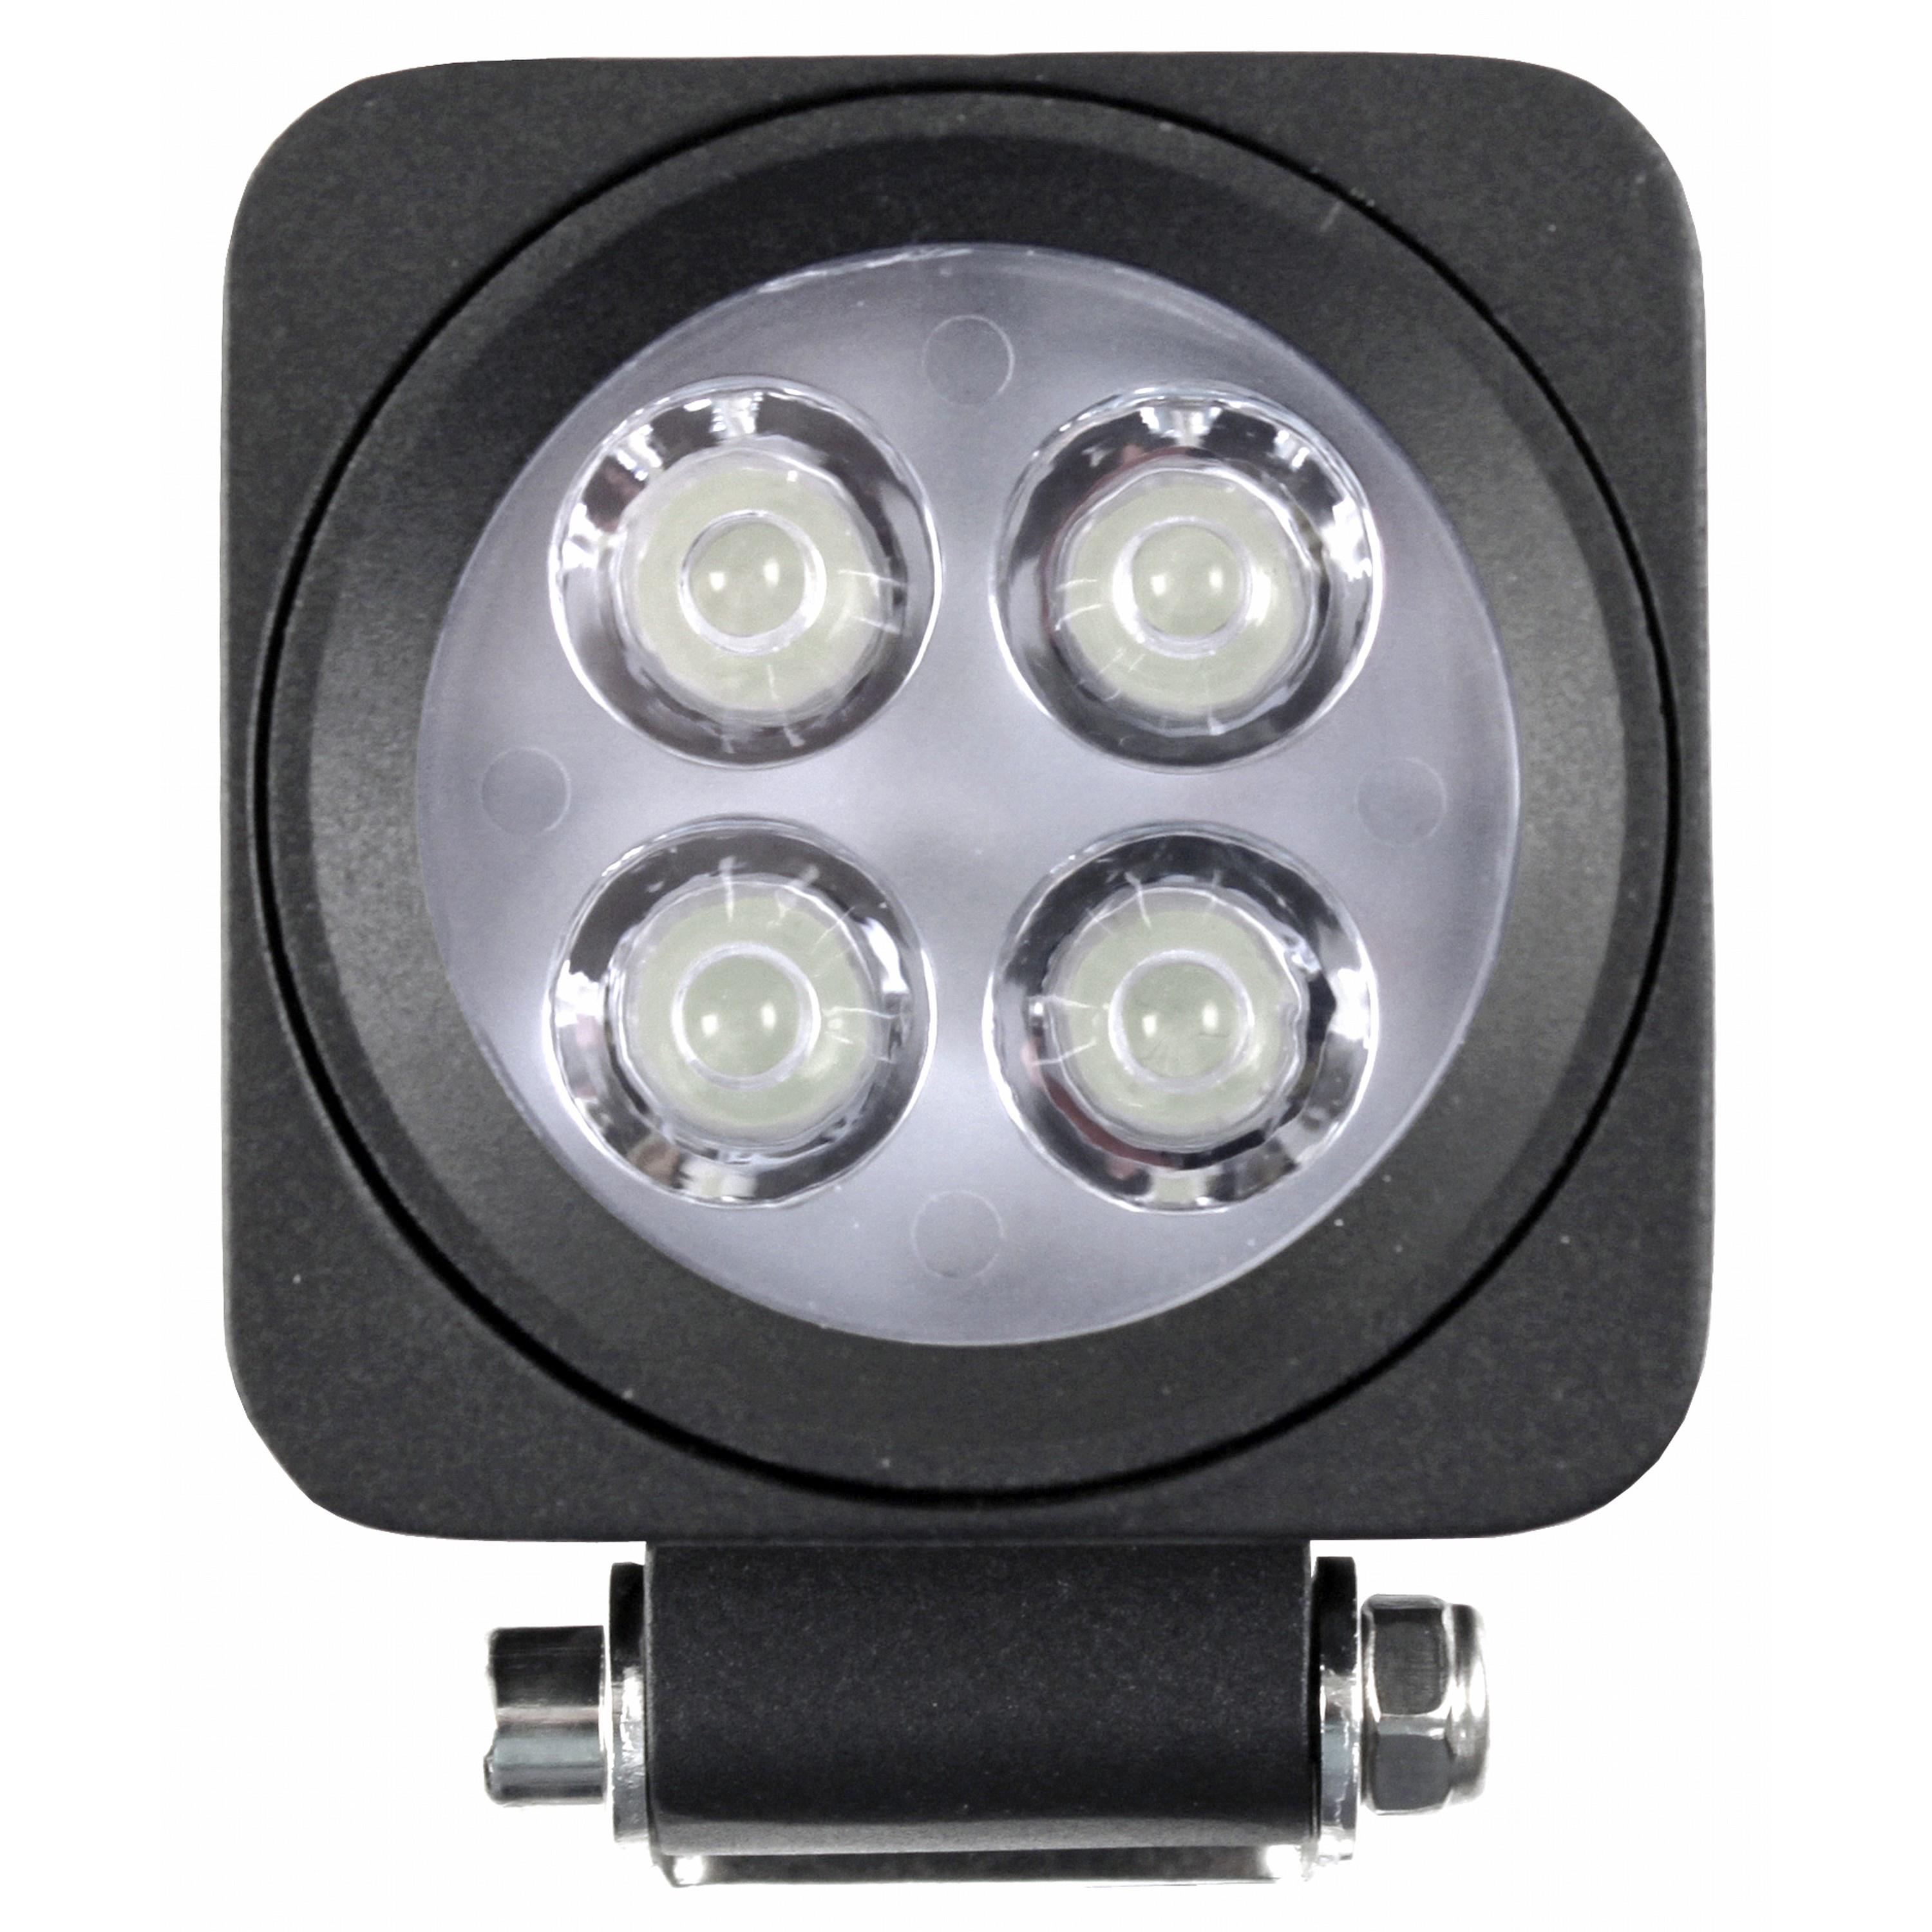 Bridgelux LED Flood/Spot Combo Light, 840 Lumens